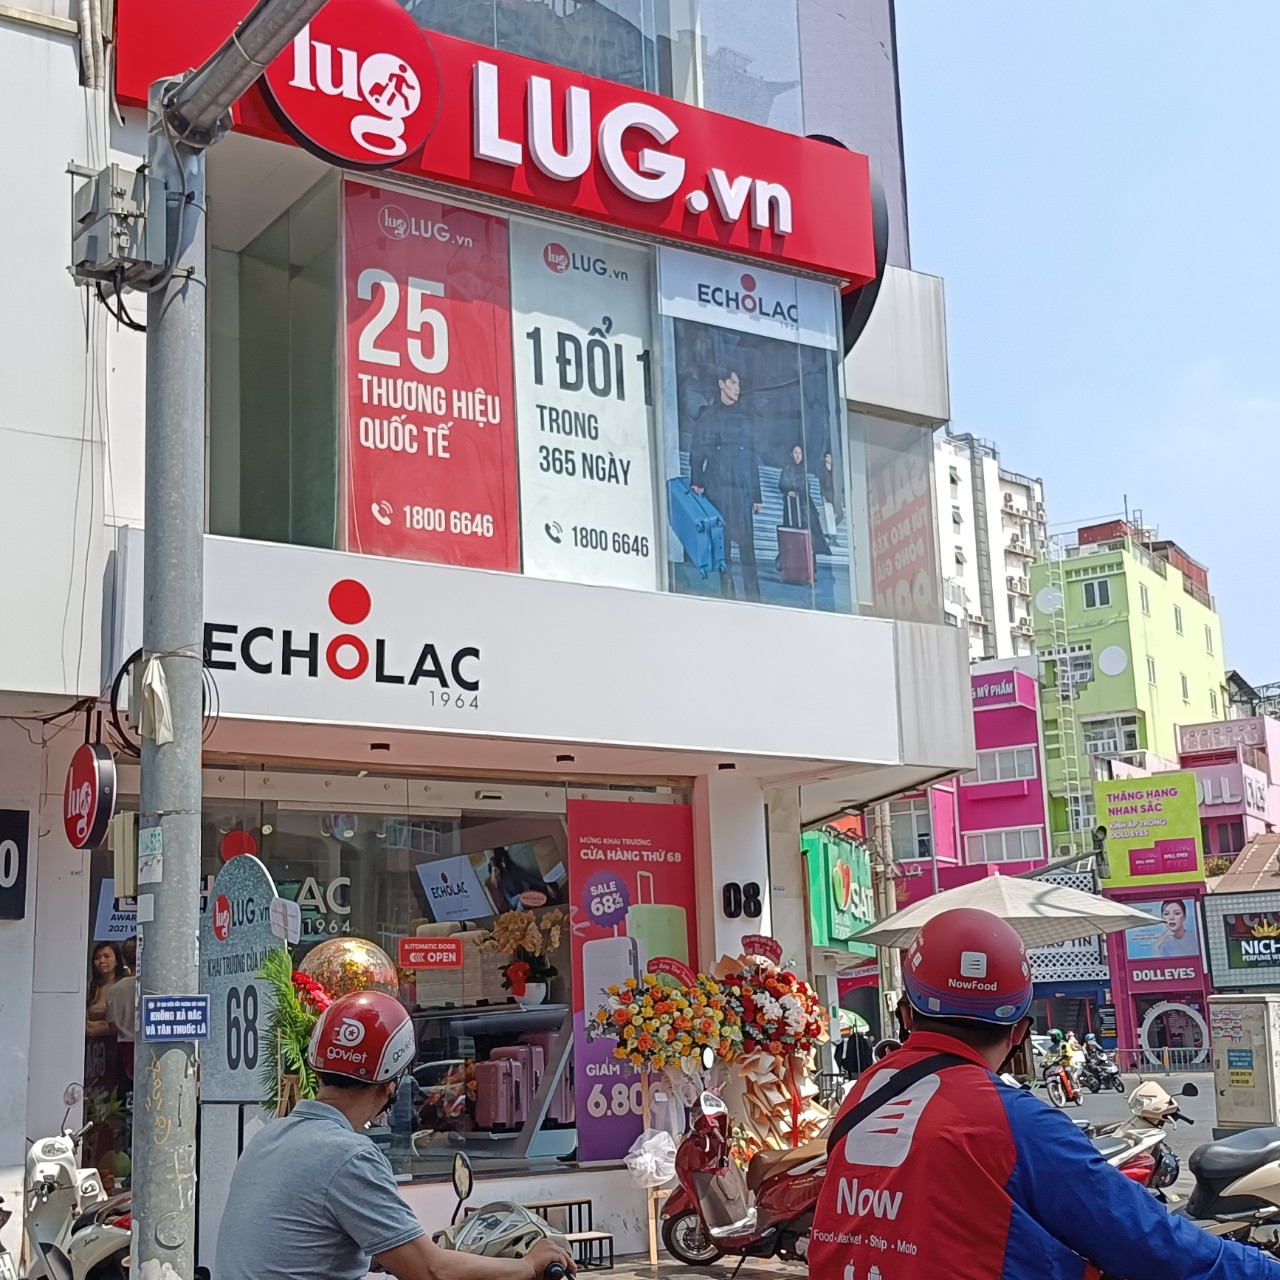 . Cửa hàng này là sự hợp tác giữa LUG.vn và Echolac - thương hiệu hành lý hàng đầu tại châu Á